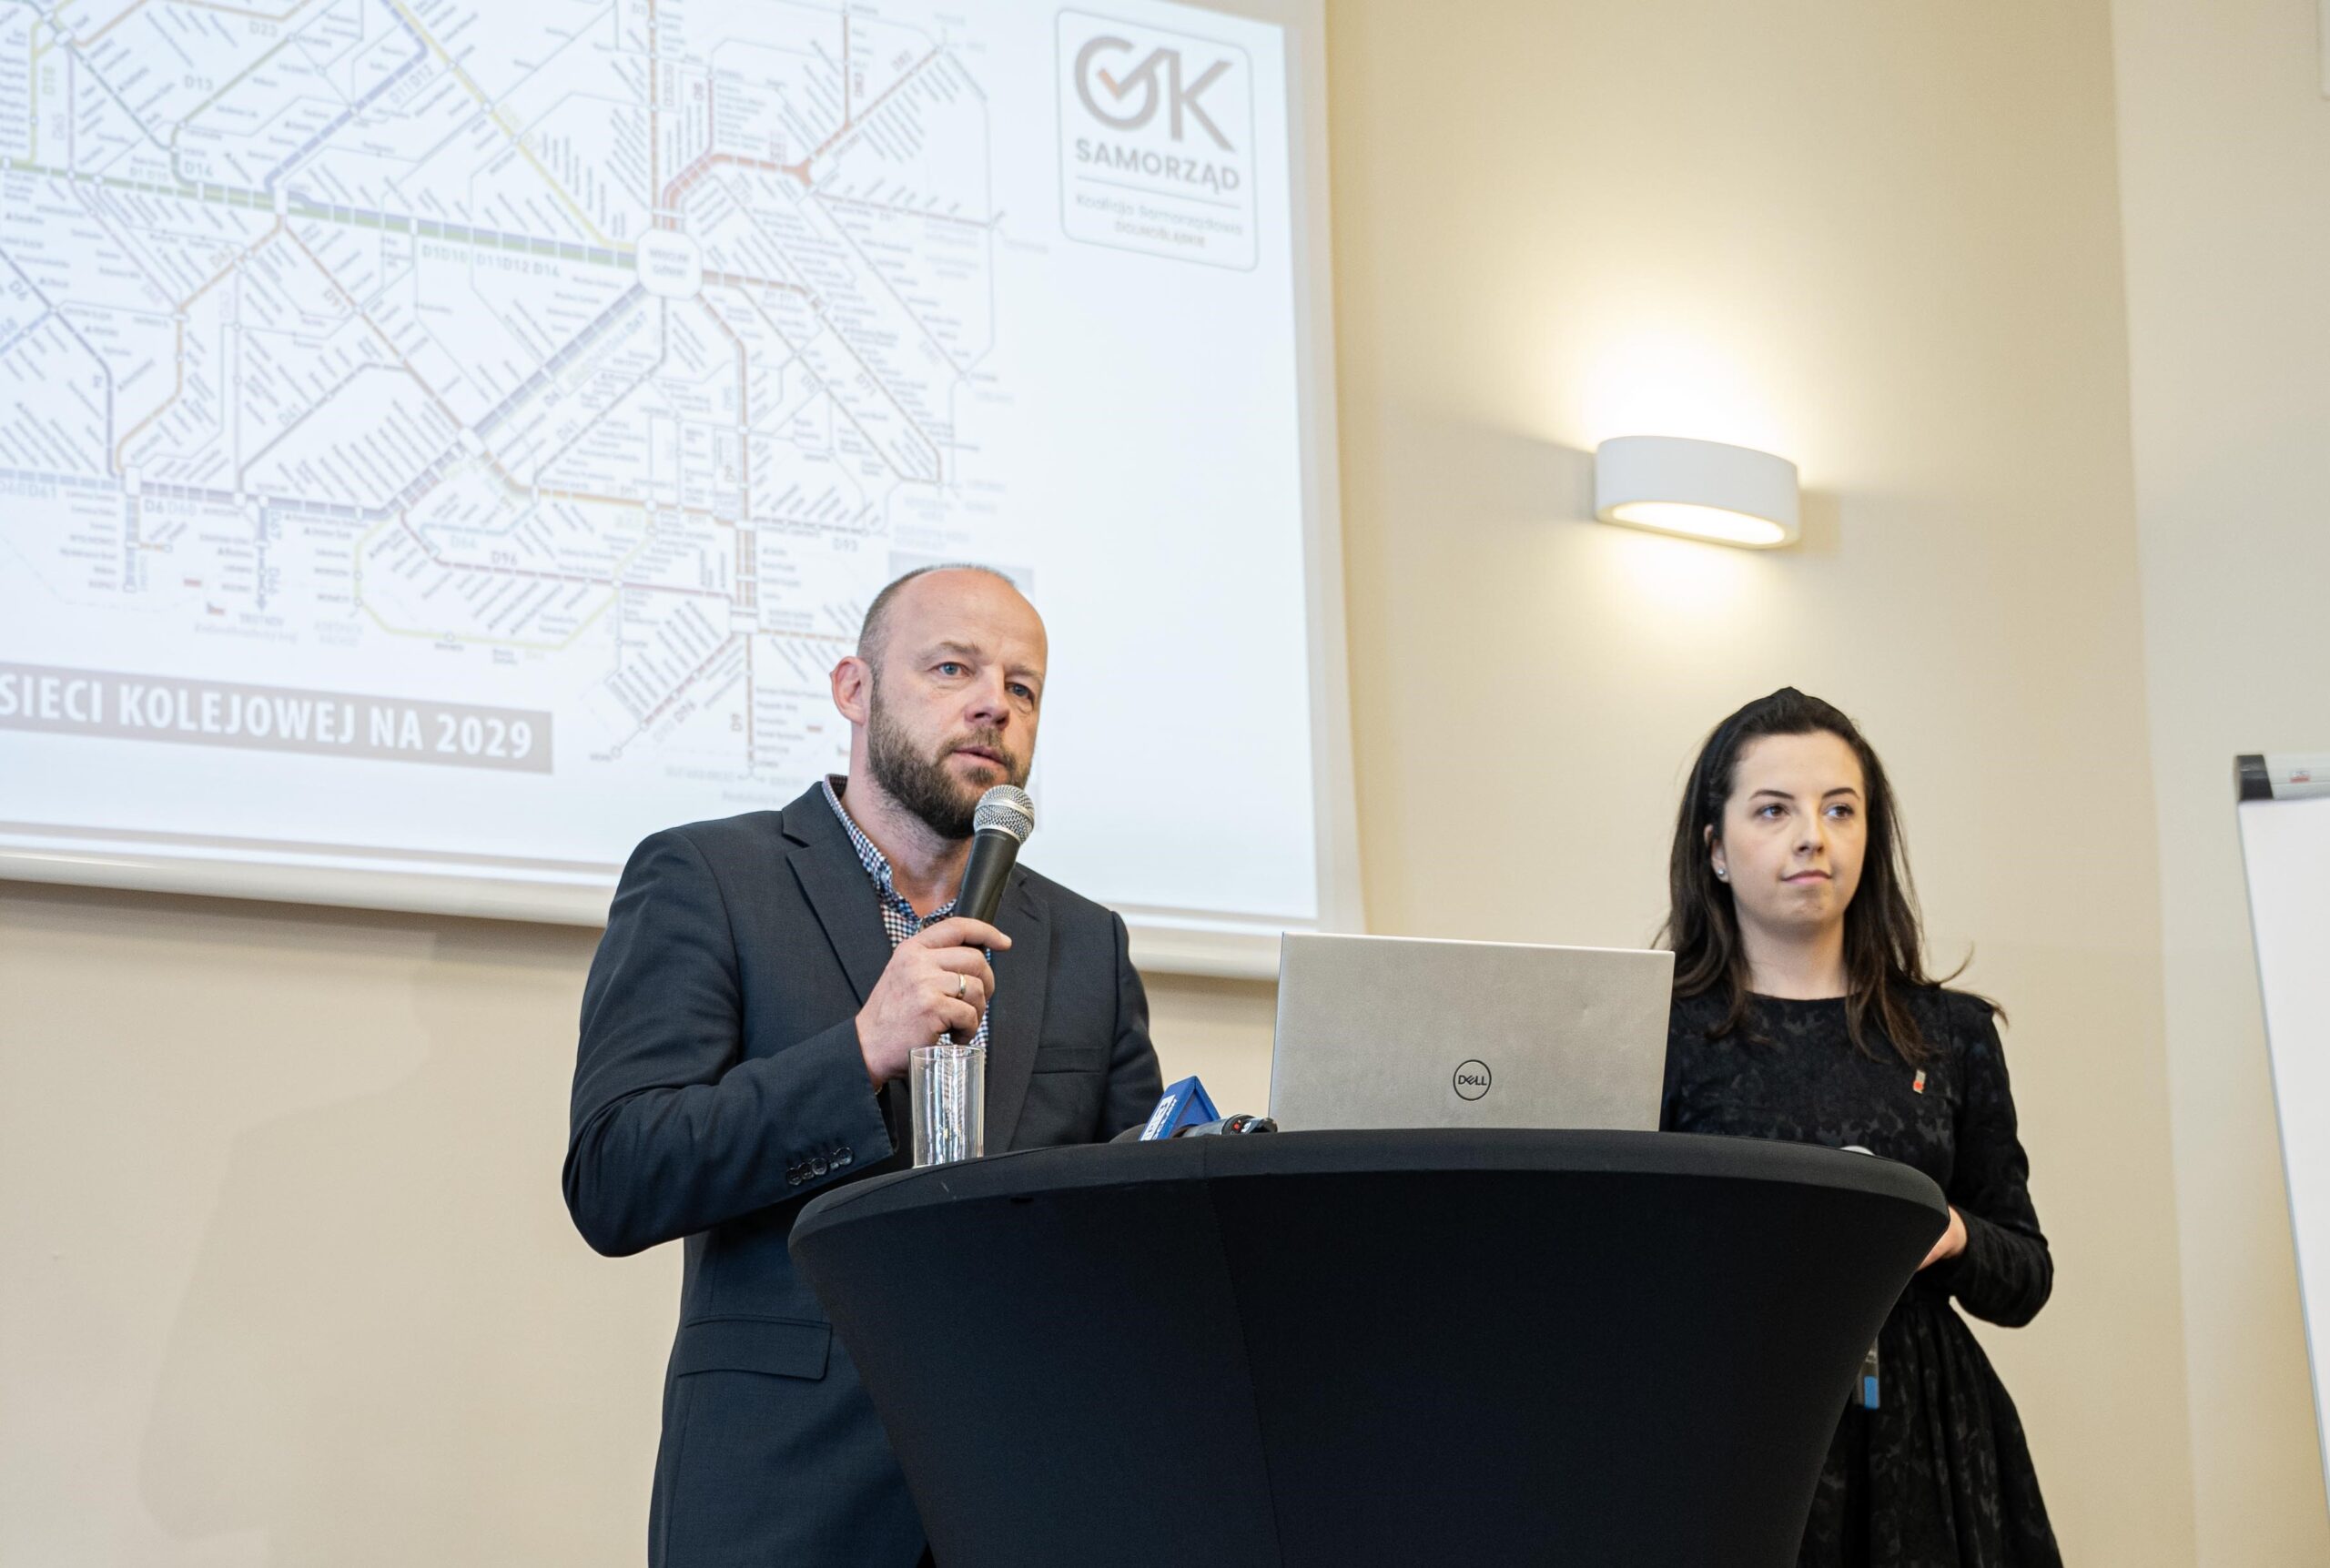 Iwona Budych i Patryk Wild prezentują swoją wizję rozwoju transportu publicznego na Dolnym Śląsku (fot. nadesłane)